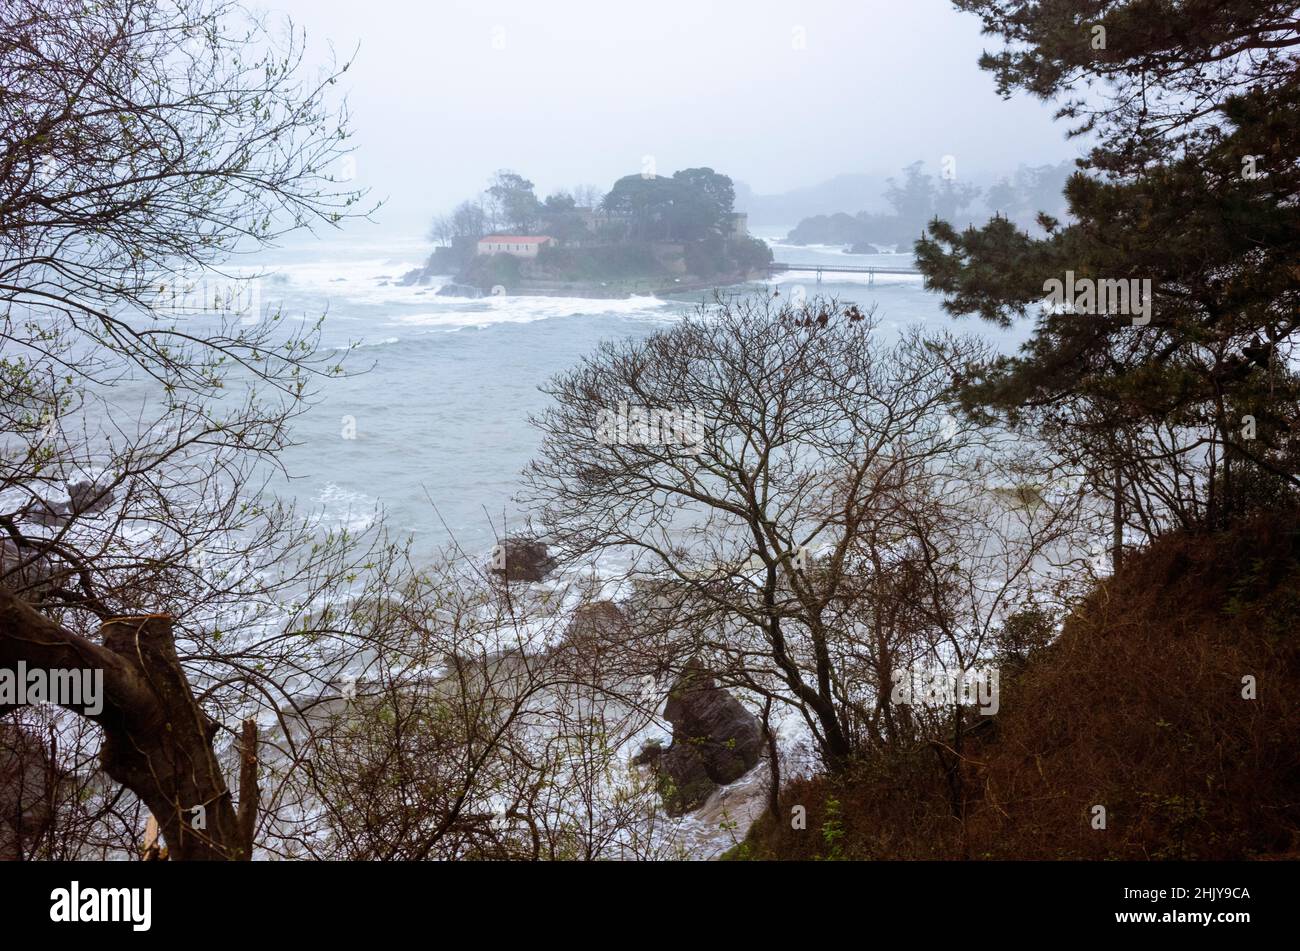 Oleiros, A Coruña Provinz, Galicien, Spanien - 11. Februar 2020 : Santa Cruz Burg auf der Insel Santa Cristina an einem nebligen Winterabend. Stockfoto